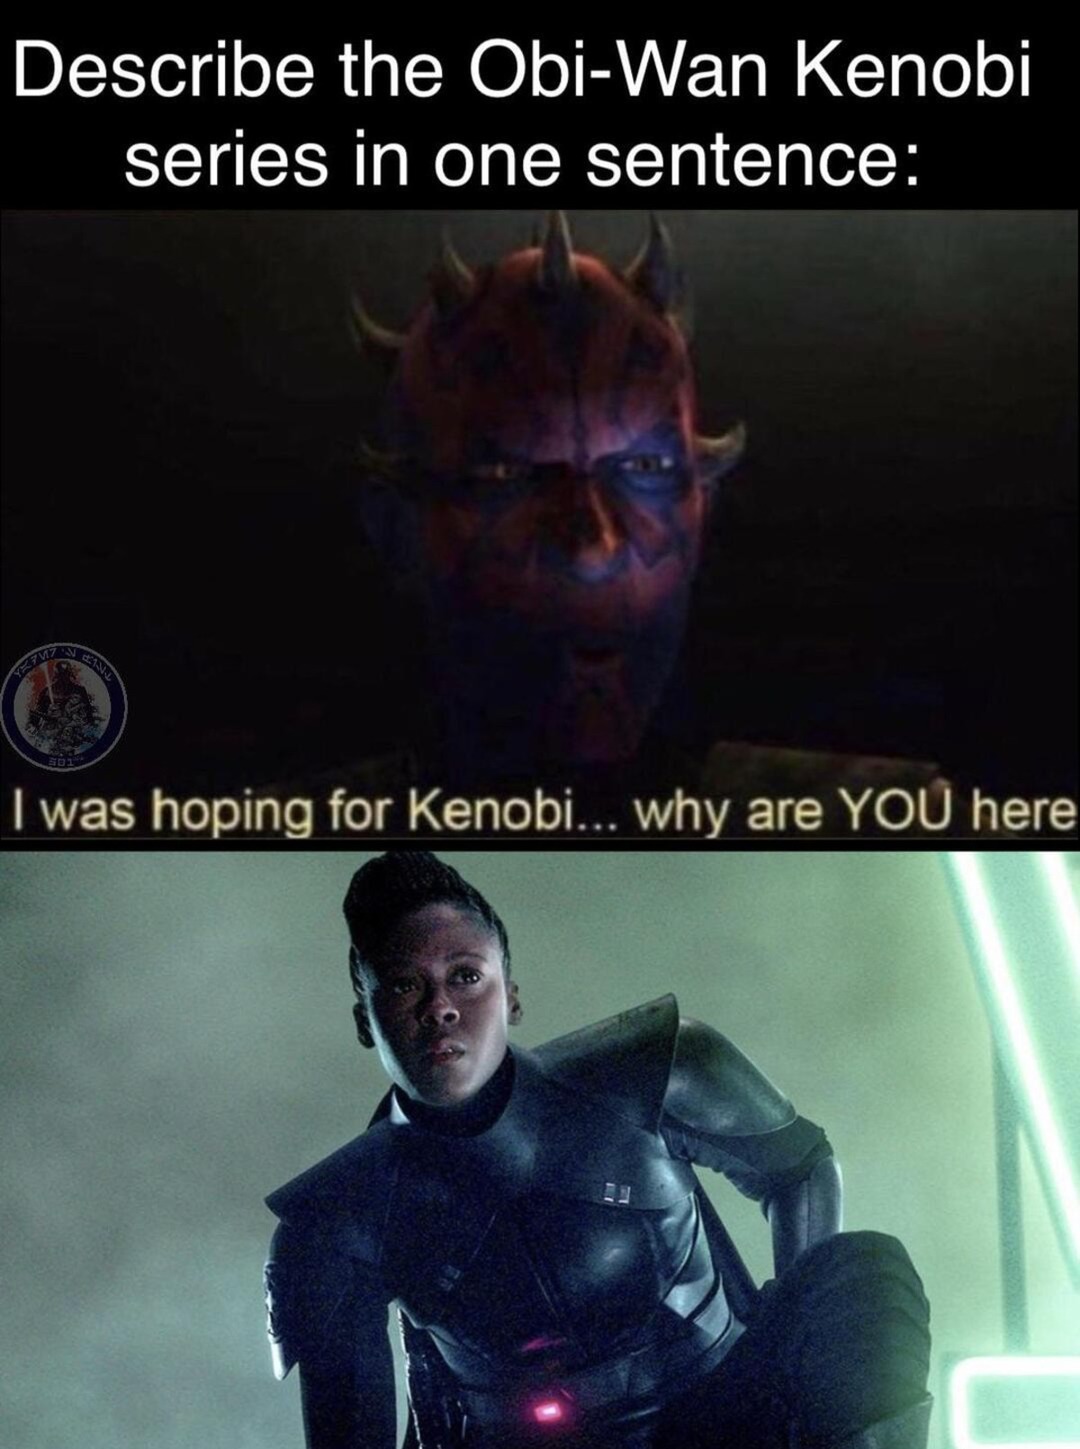 Kenobi series in a nutshell - meme